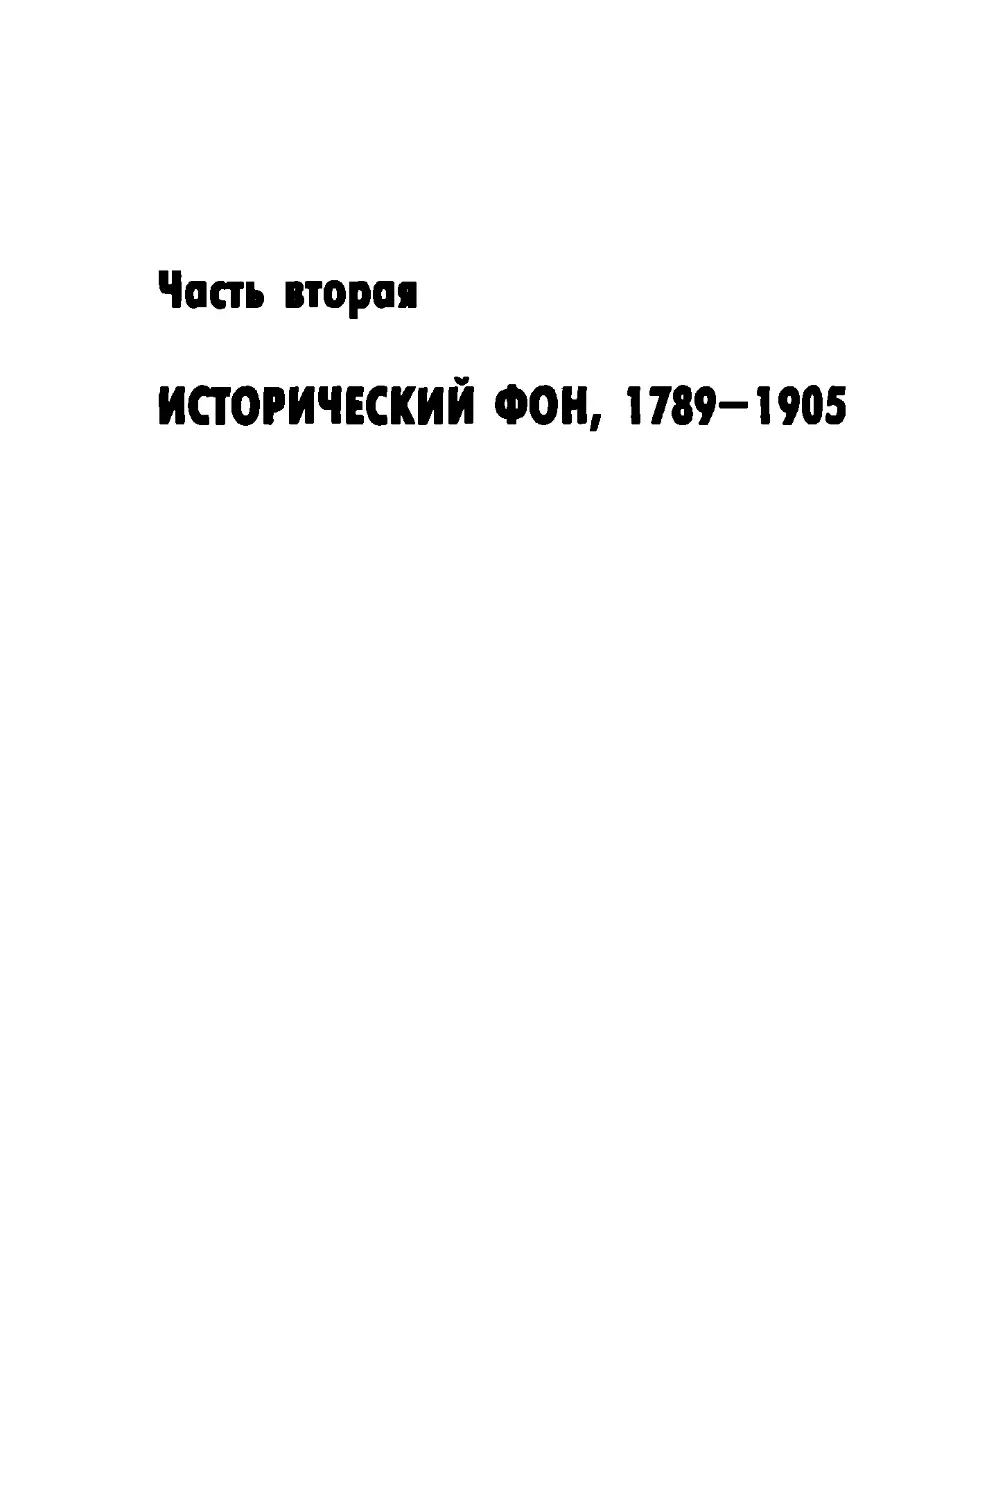 Часть вторая. ИСТОРИЧЕСКИЙ ФОН, 1789-1905